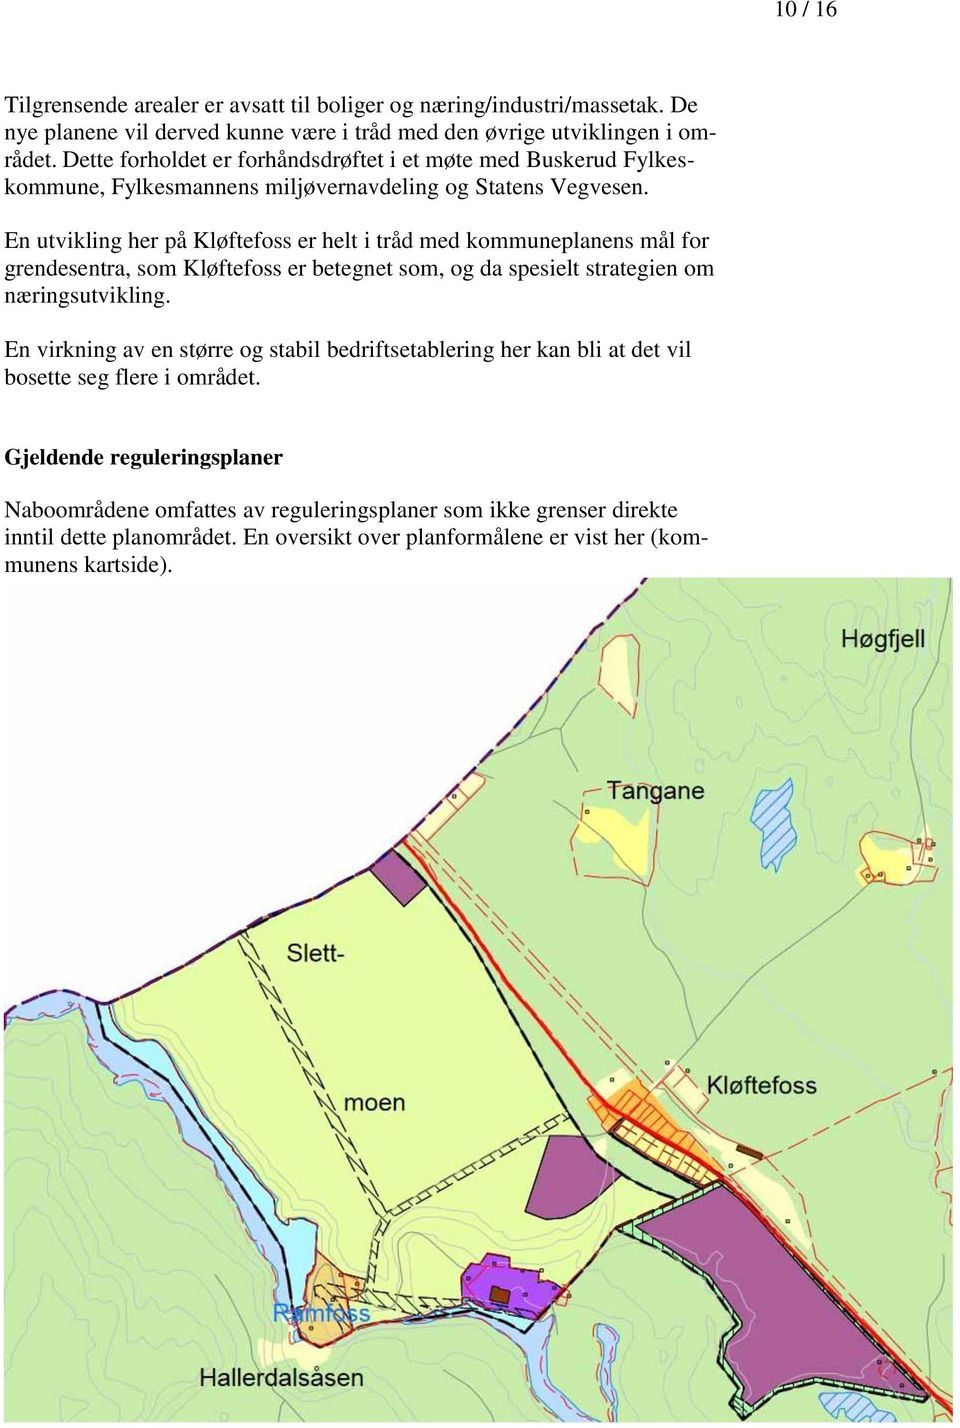 En utvikling her på Kløftefoss er helt i tråd med kommuneplanens mål for grendesentra, som Kløftefoss er betegnet som, og da spesielt strategien om næringsutvikling.